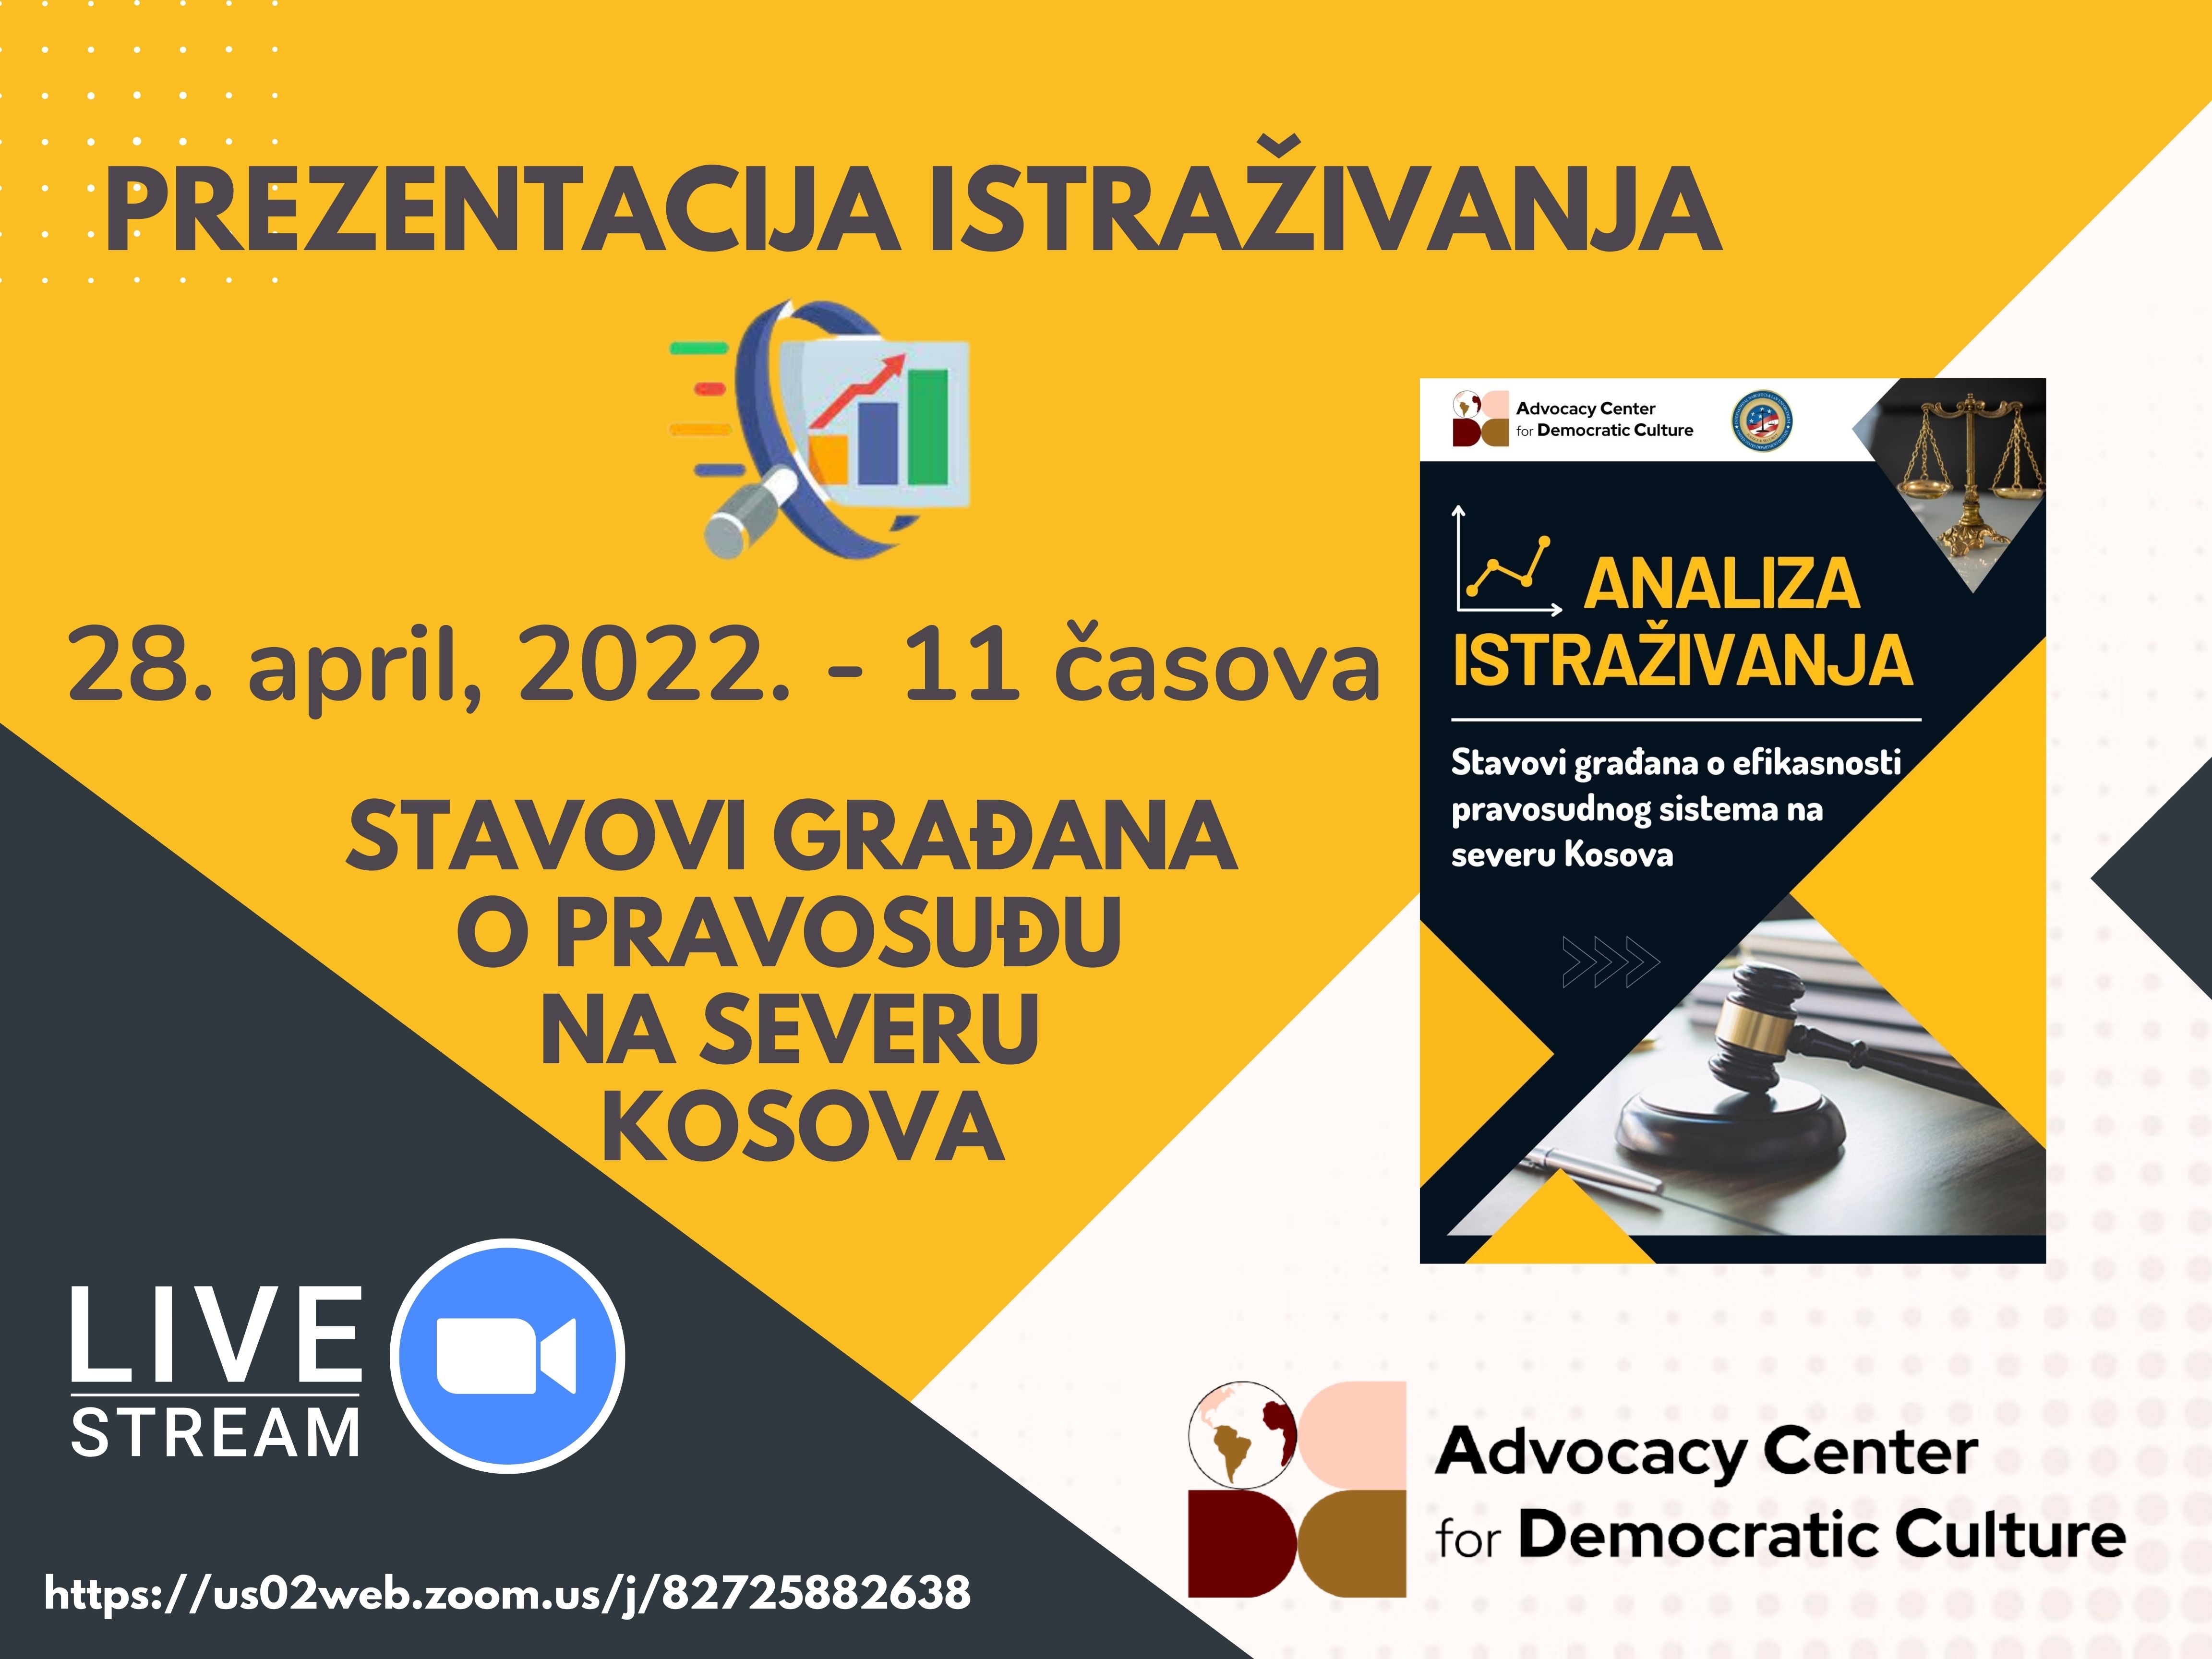 javna-diskusija-predstavlane-istrazivana-o-pravosudu-28-april-2022-1100-1300